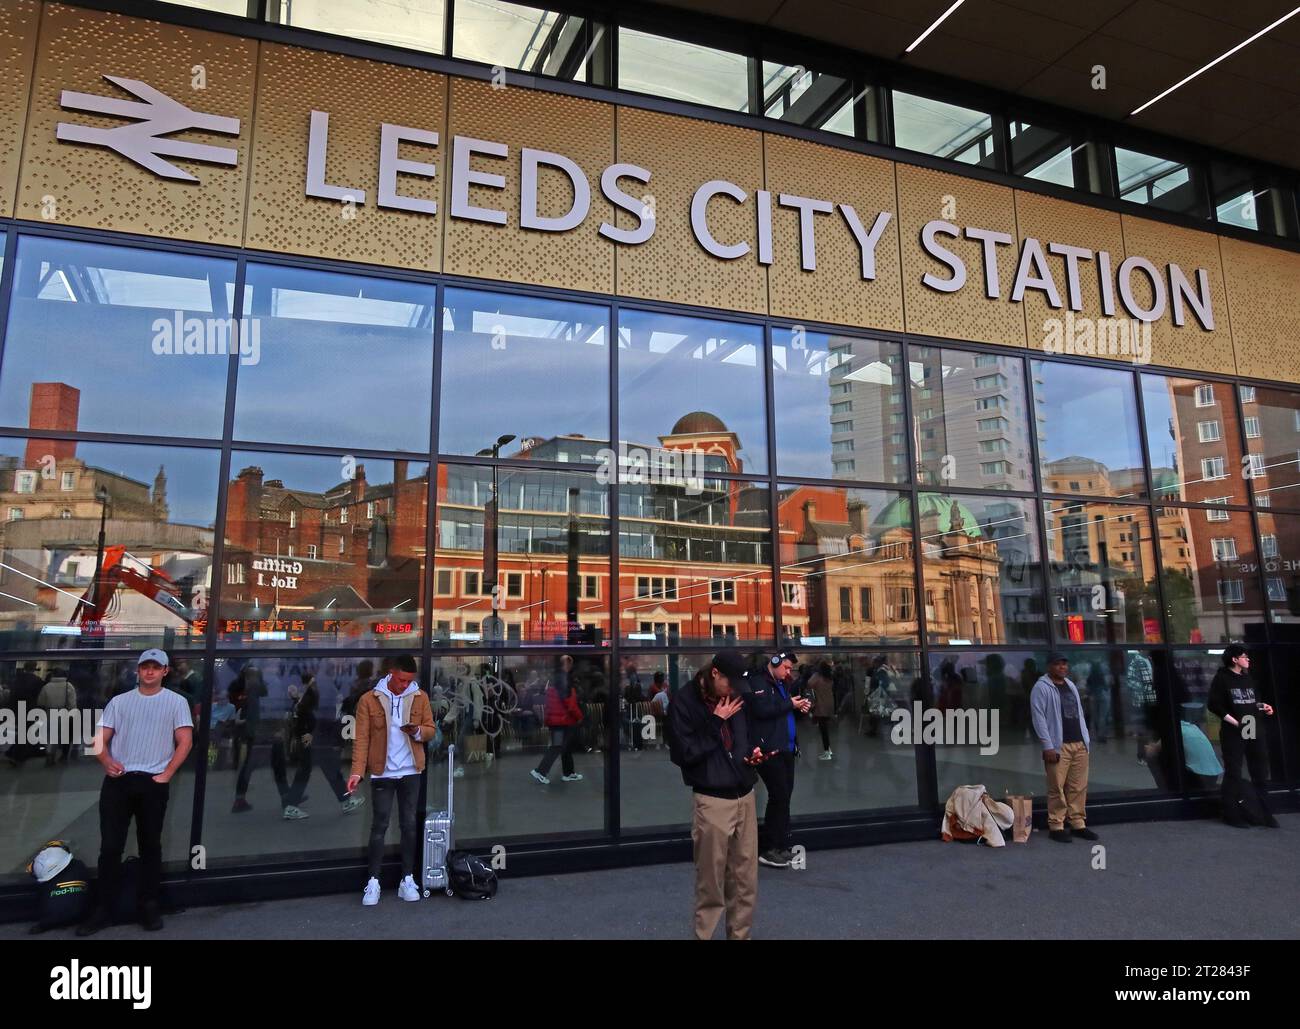 Entrée principale 2023 avec réflexion du paysage urbain, à l'extérieur de la gare de Leeds City à New Station St, Leeds, Yorkshire, Angleterre, LS1 4DY Banque D'Images